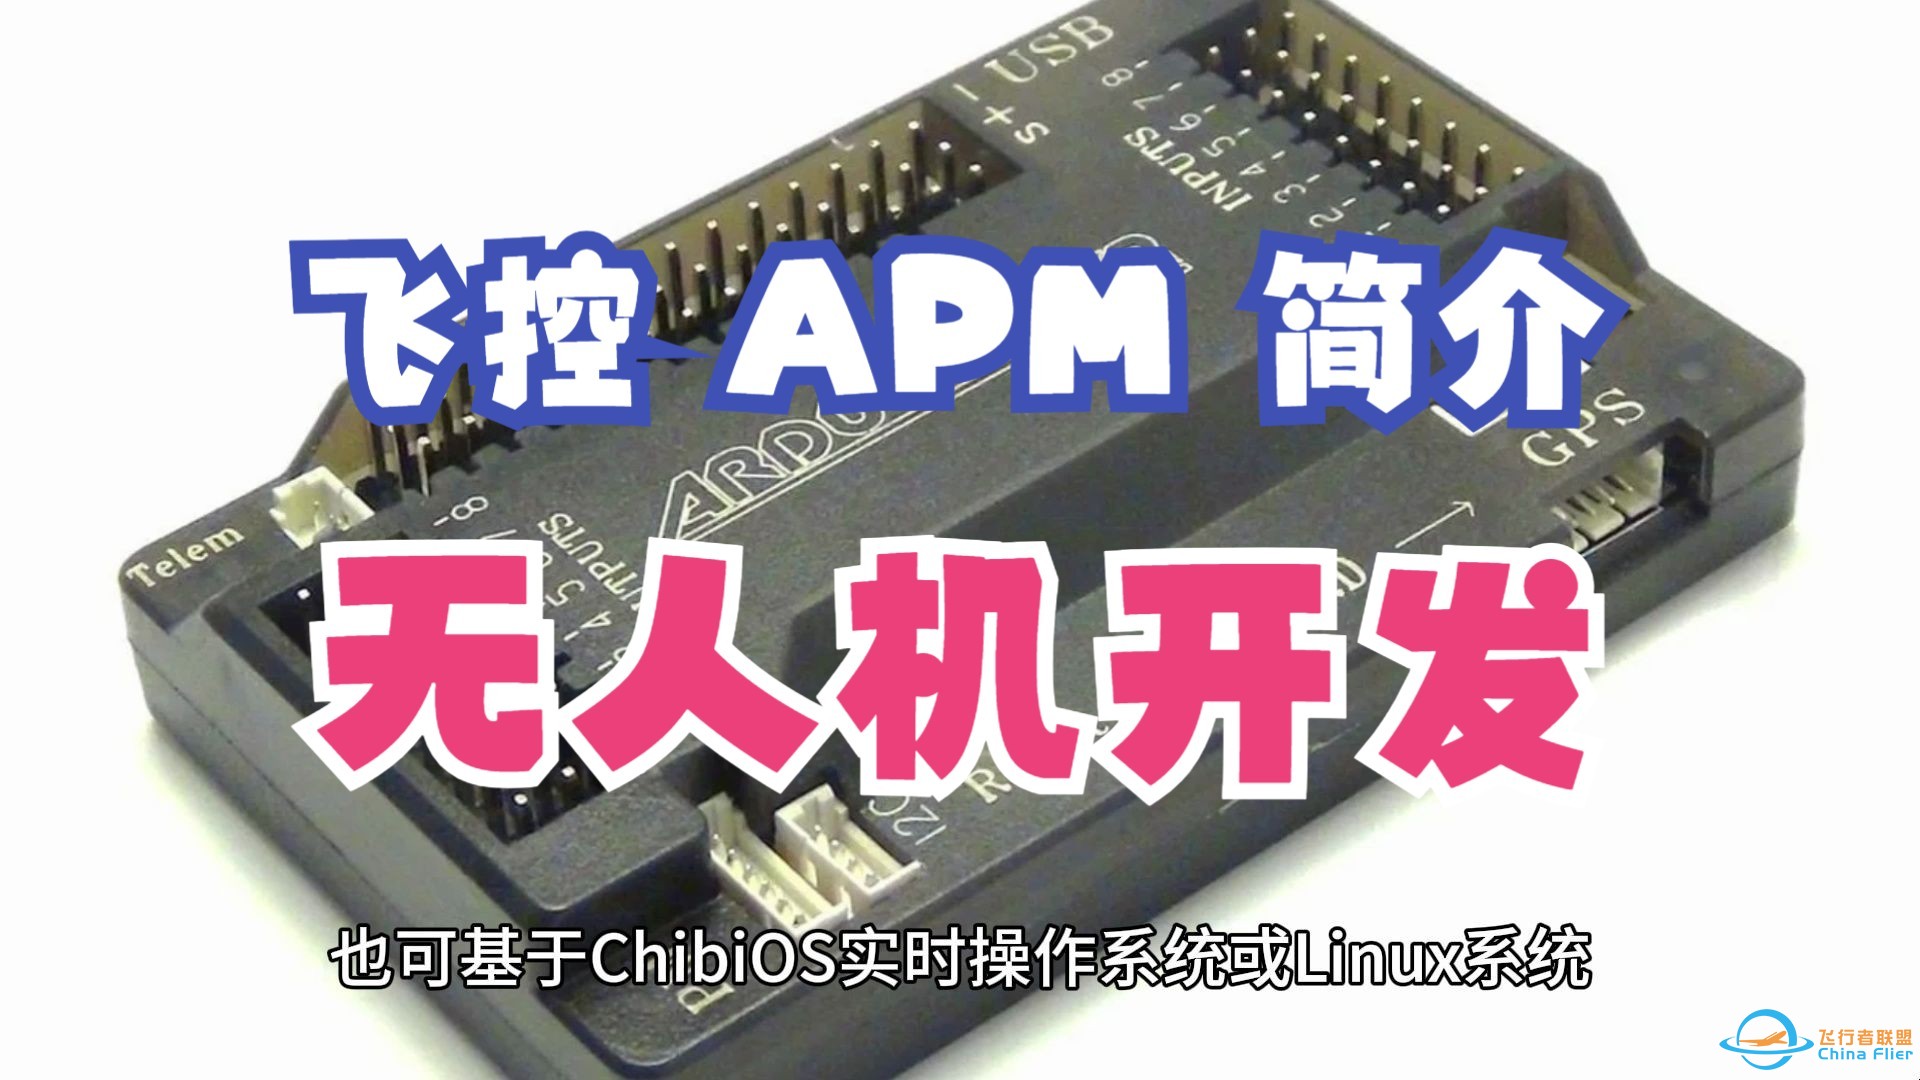 飞控 APM/Ardupilot 简介，无人机开发实践 - 第 3 期 RISC-V Linux 系统开发公开课-1.jpg